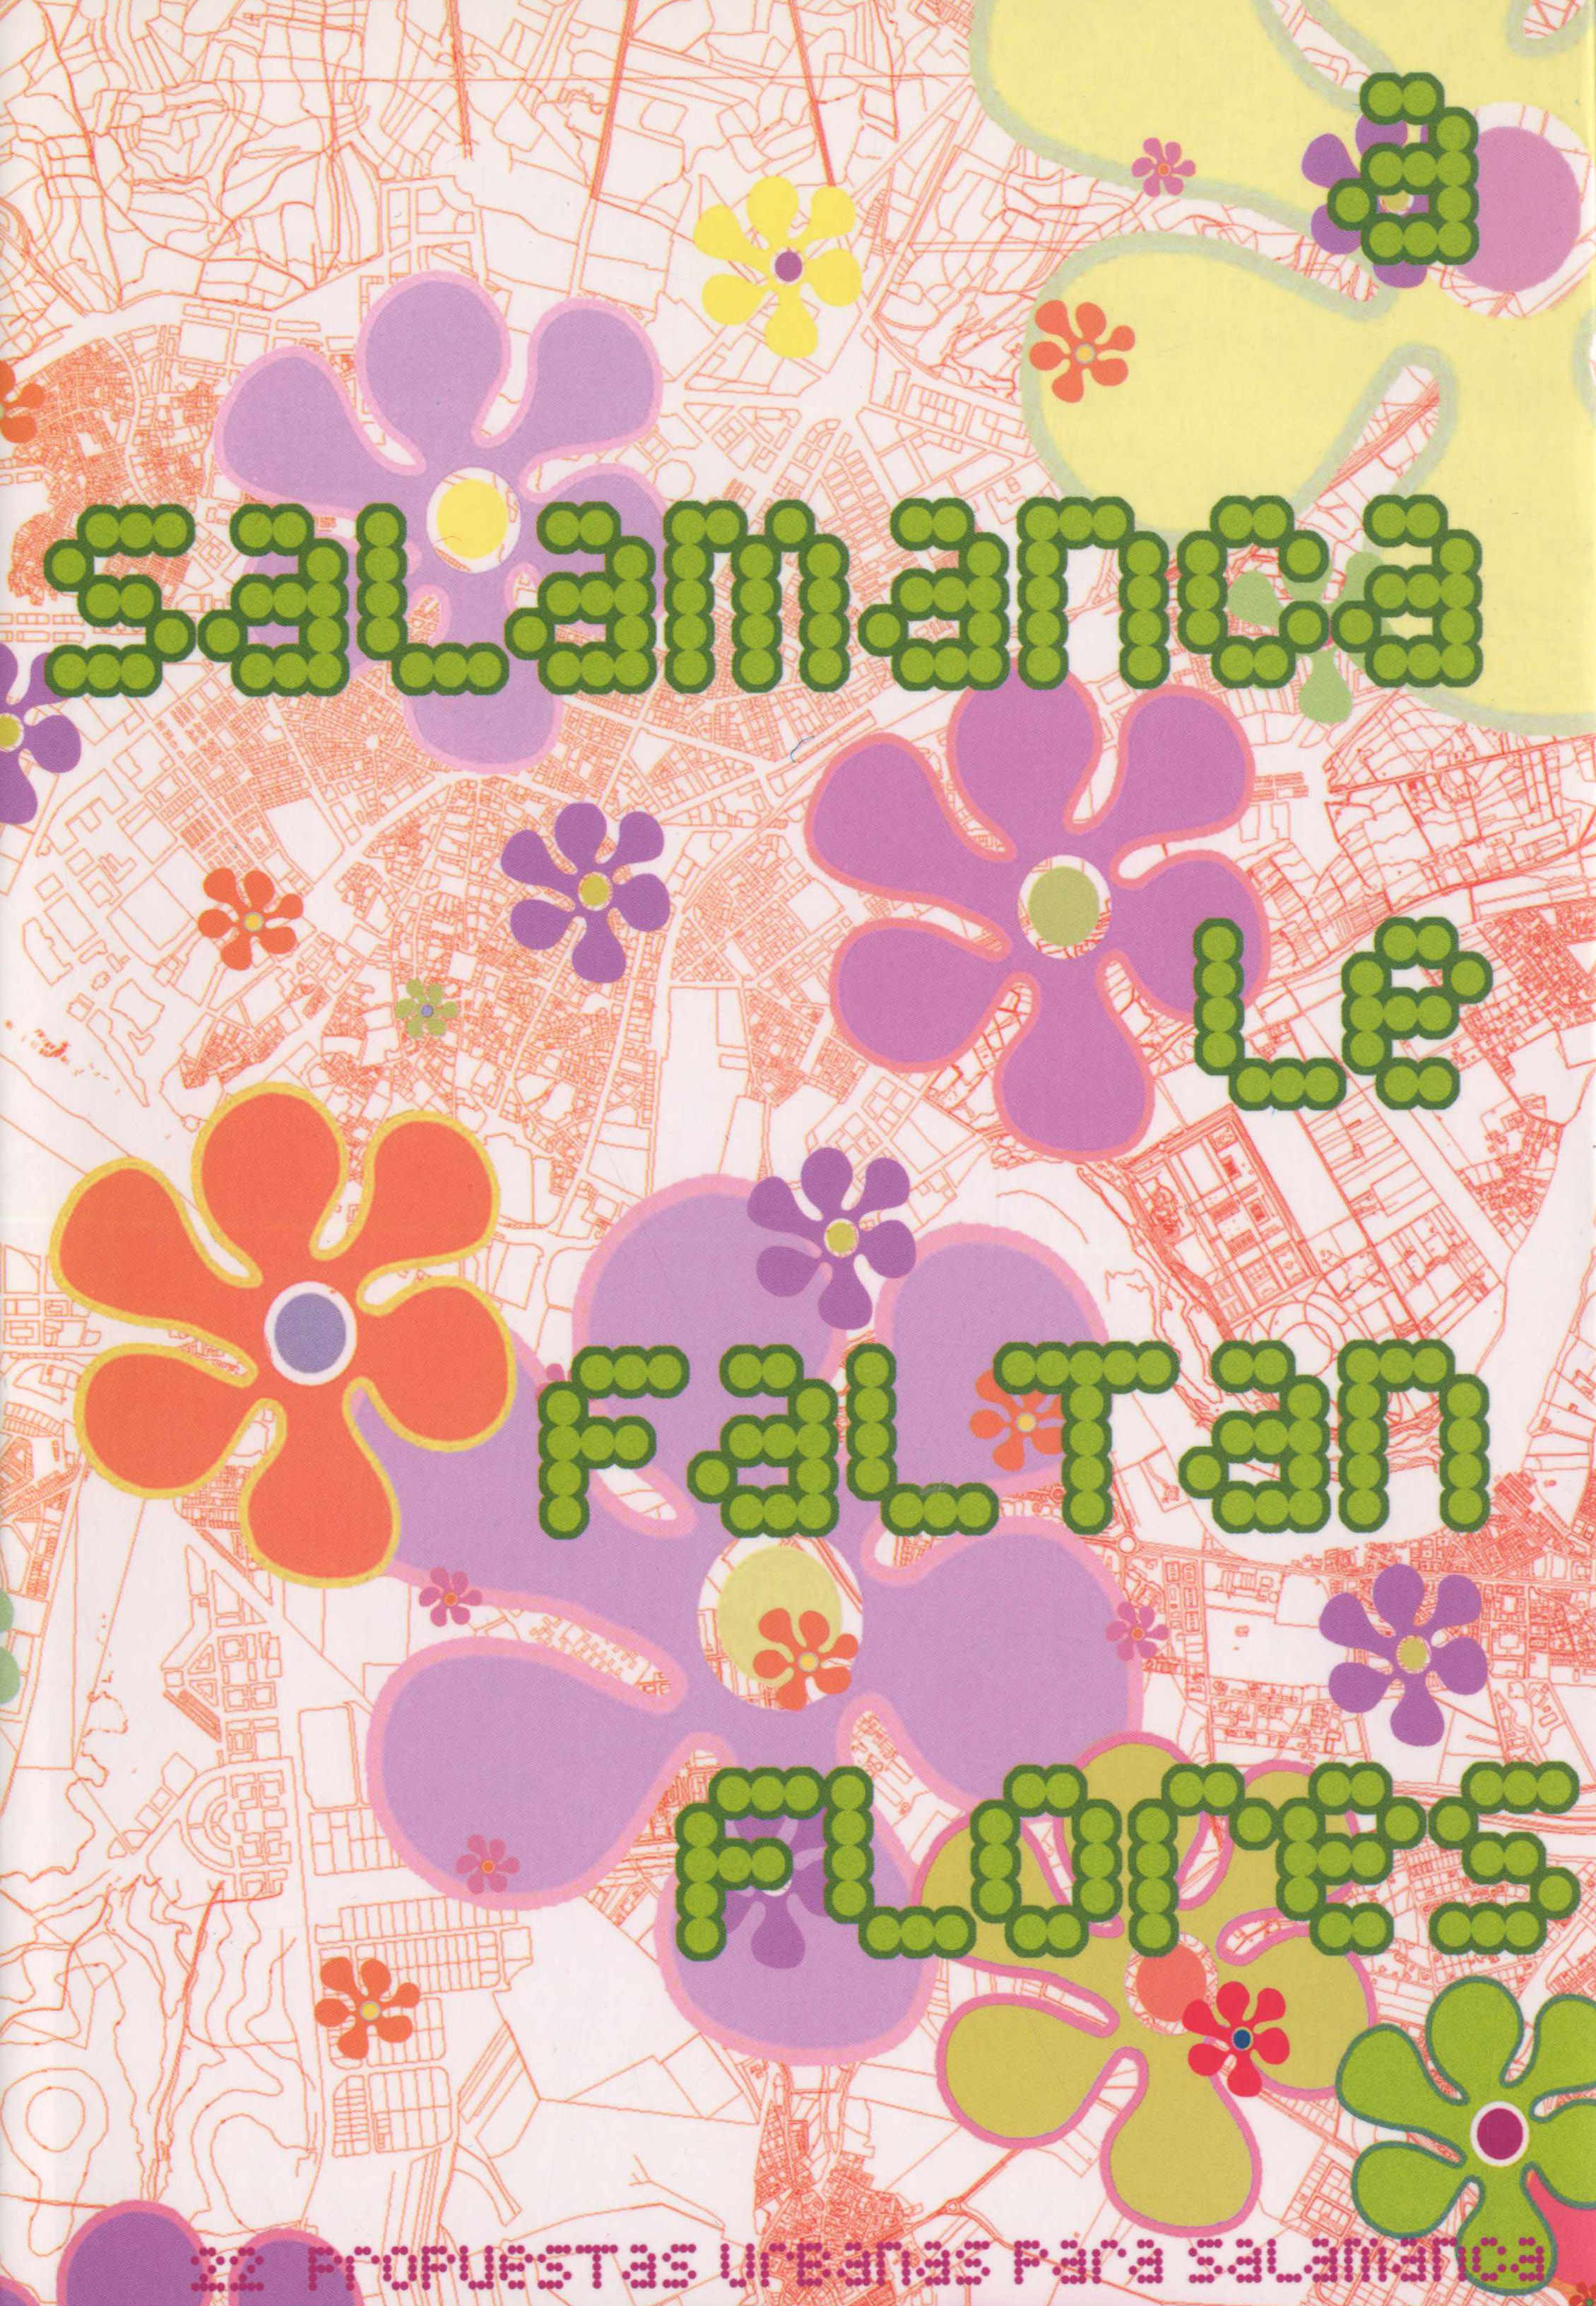 A Salamanca le faltan flores. Propuestas Urbanas